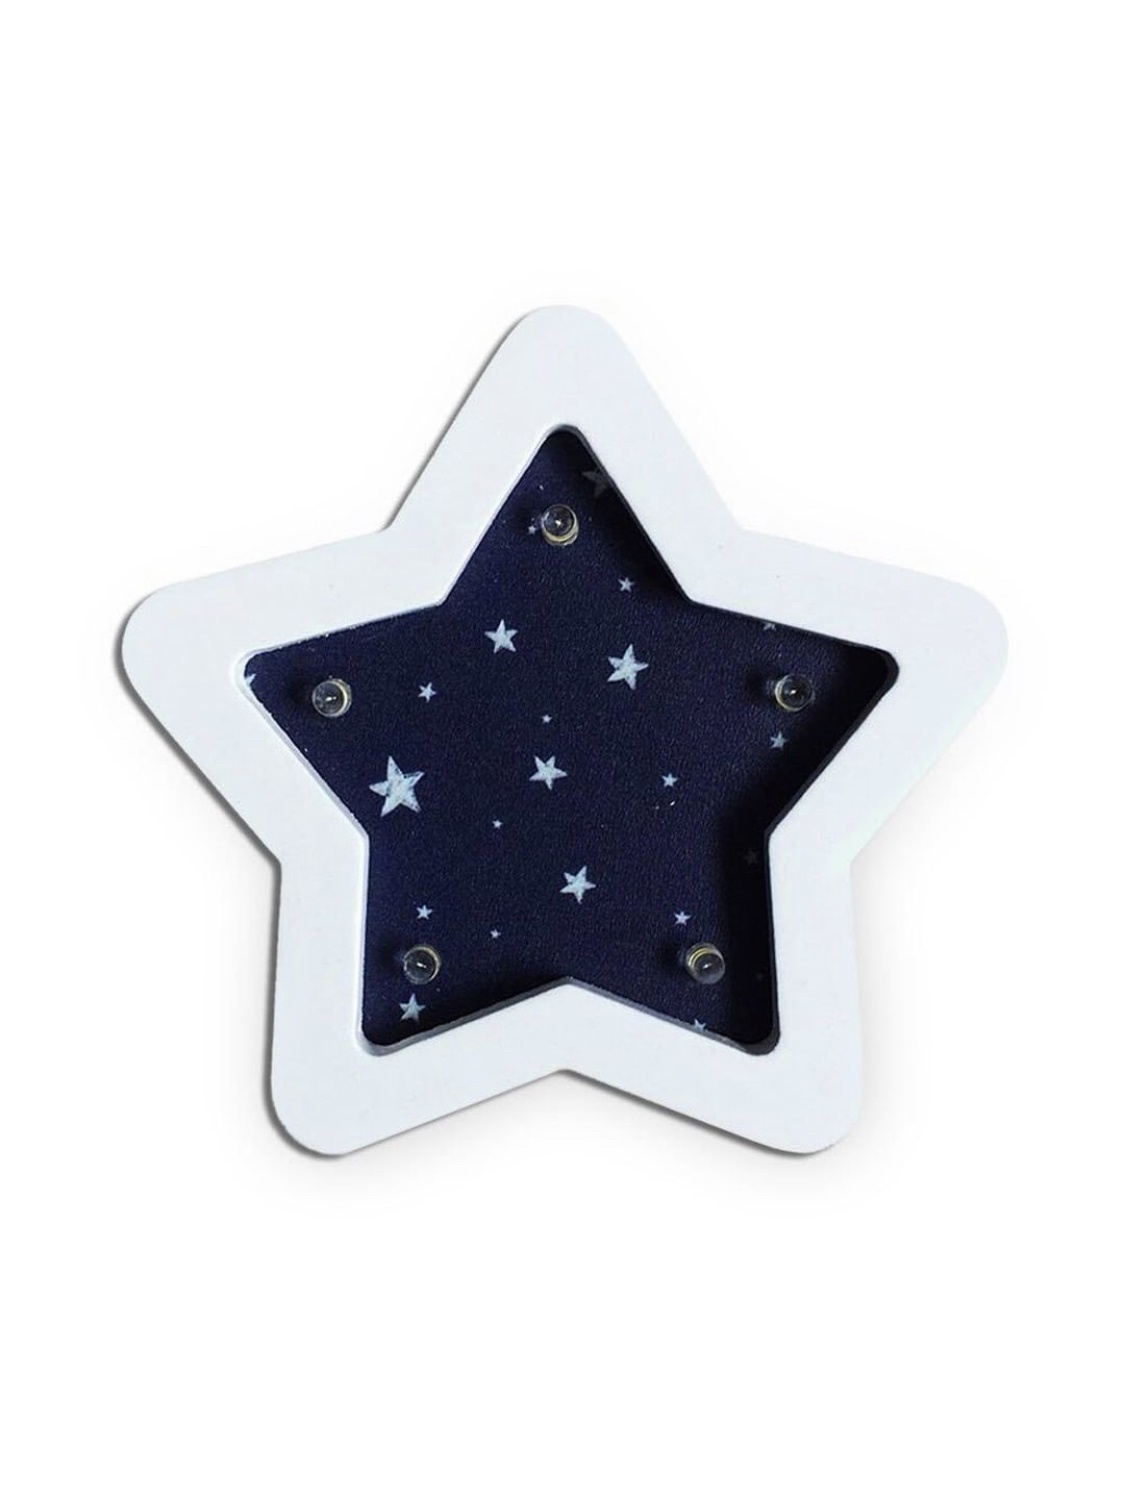 фото Ночник детский Звезда походная AKLIGHT009-2 синий, белый Amelia kingdom